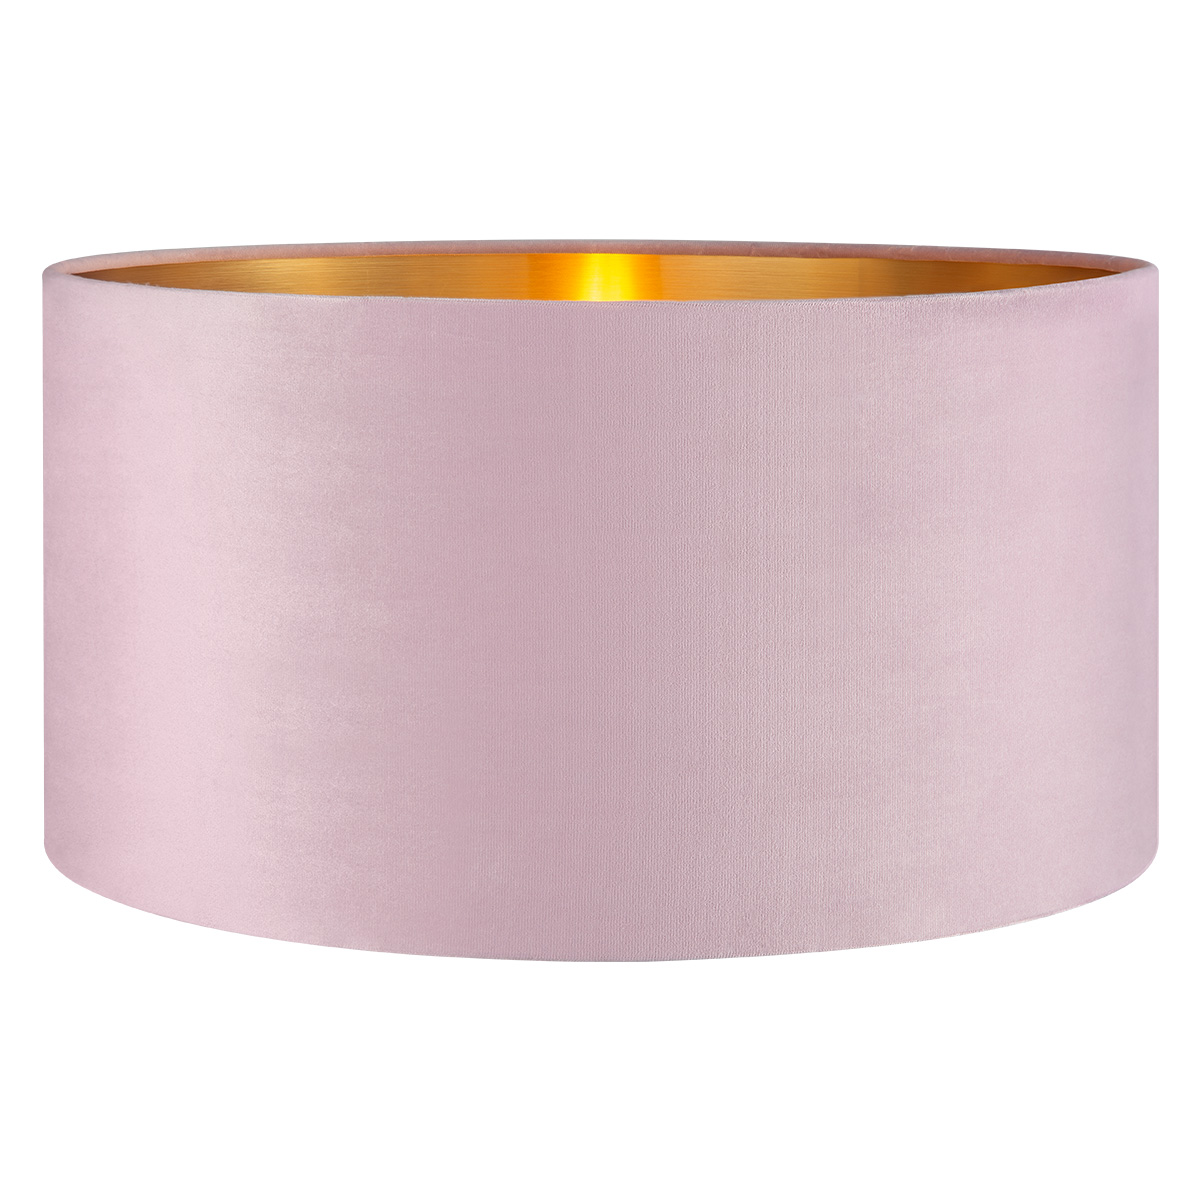 Tangla lighting - TLS7564-45PK - Lampshade - velvet - pink - diameter 45cm - E27